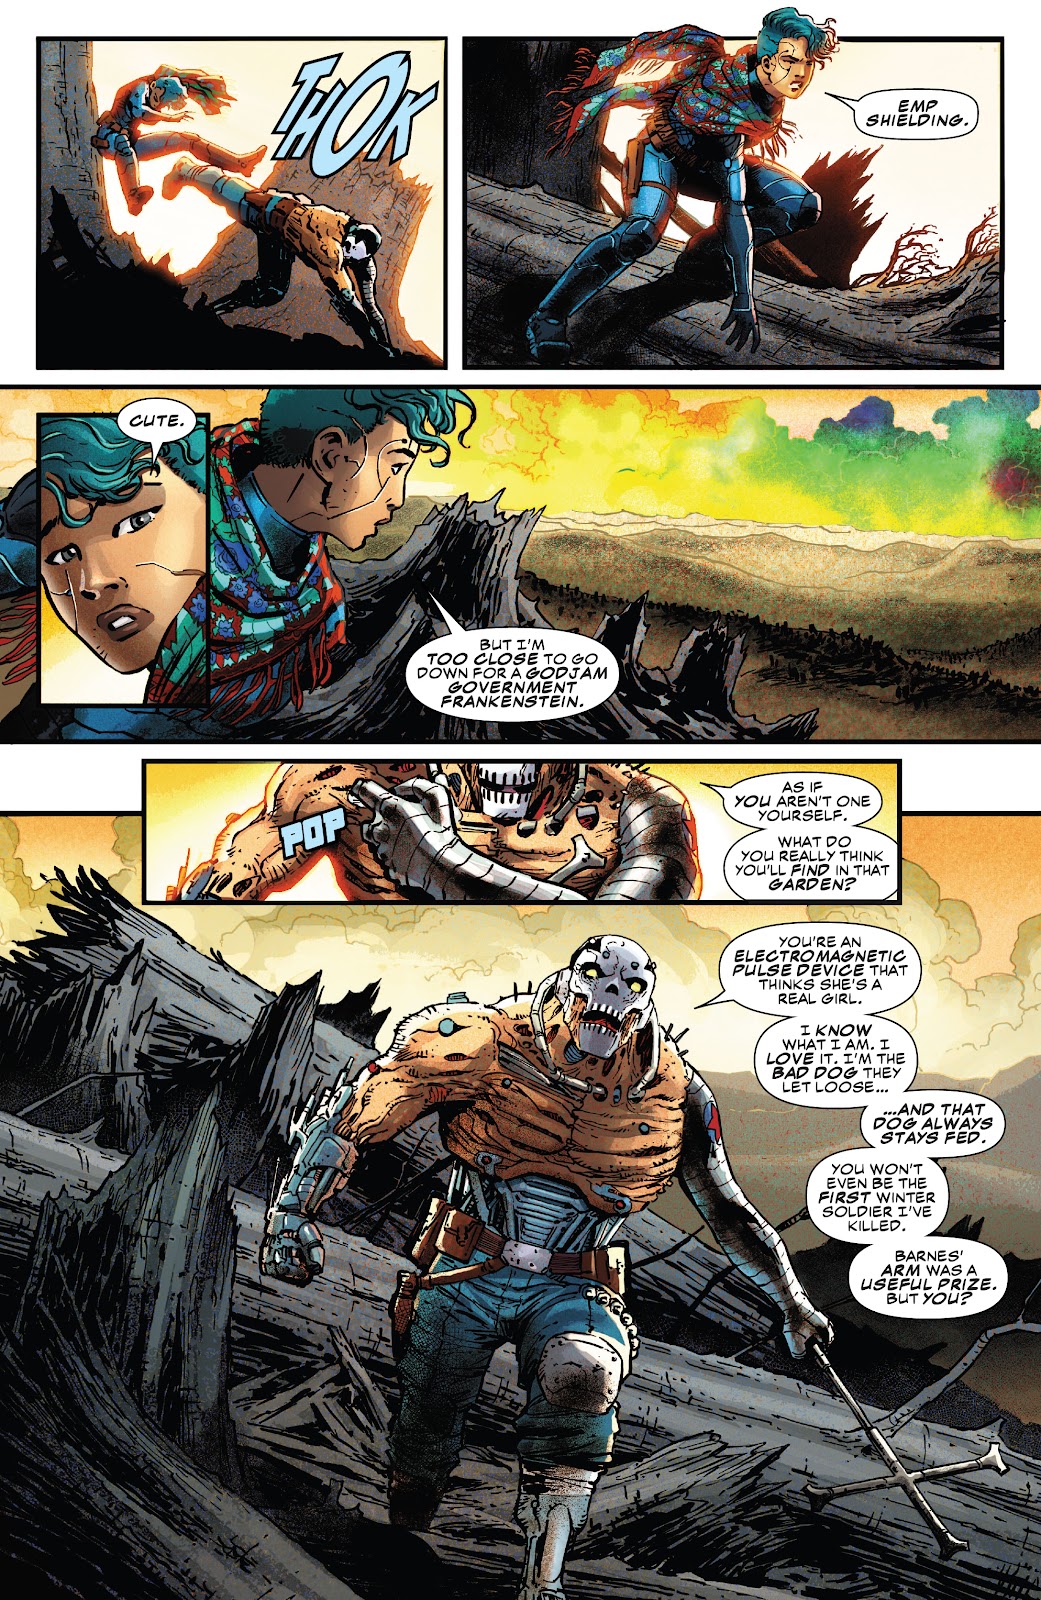 Spider-Man 2099: Exodus Alpha issue 1 - Page 17